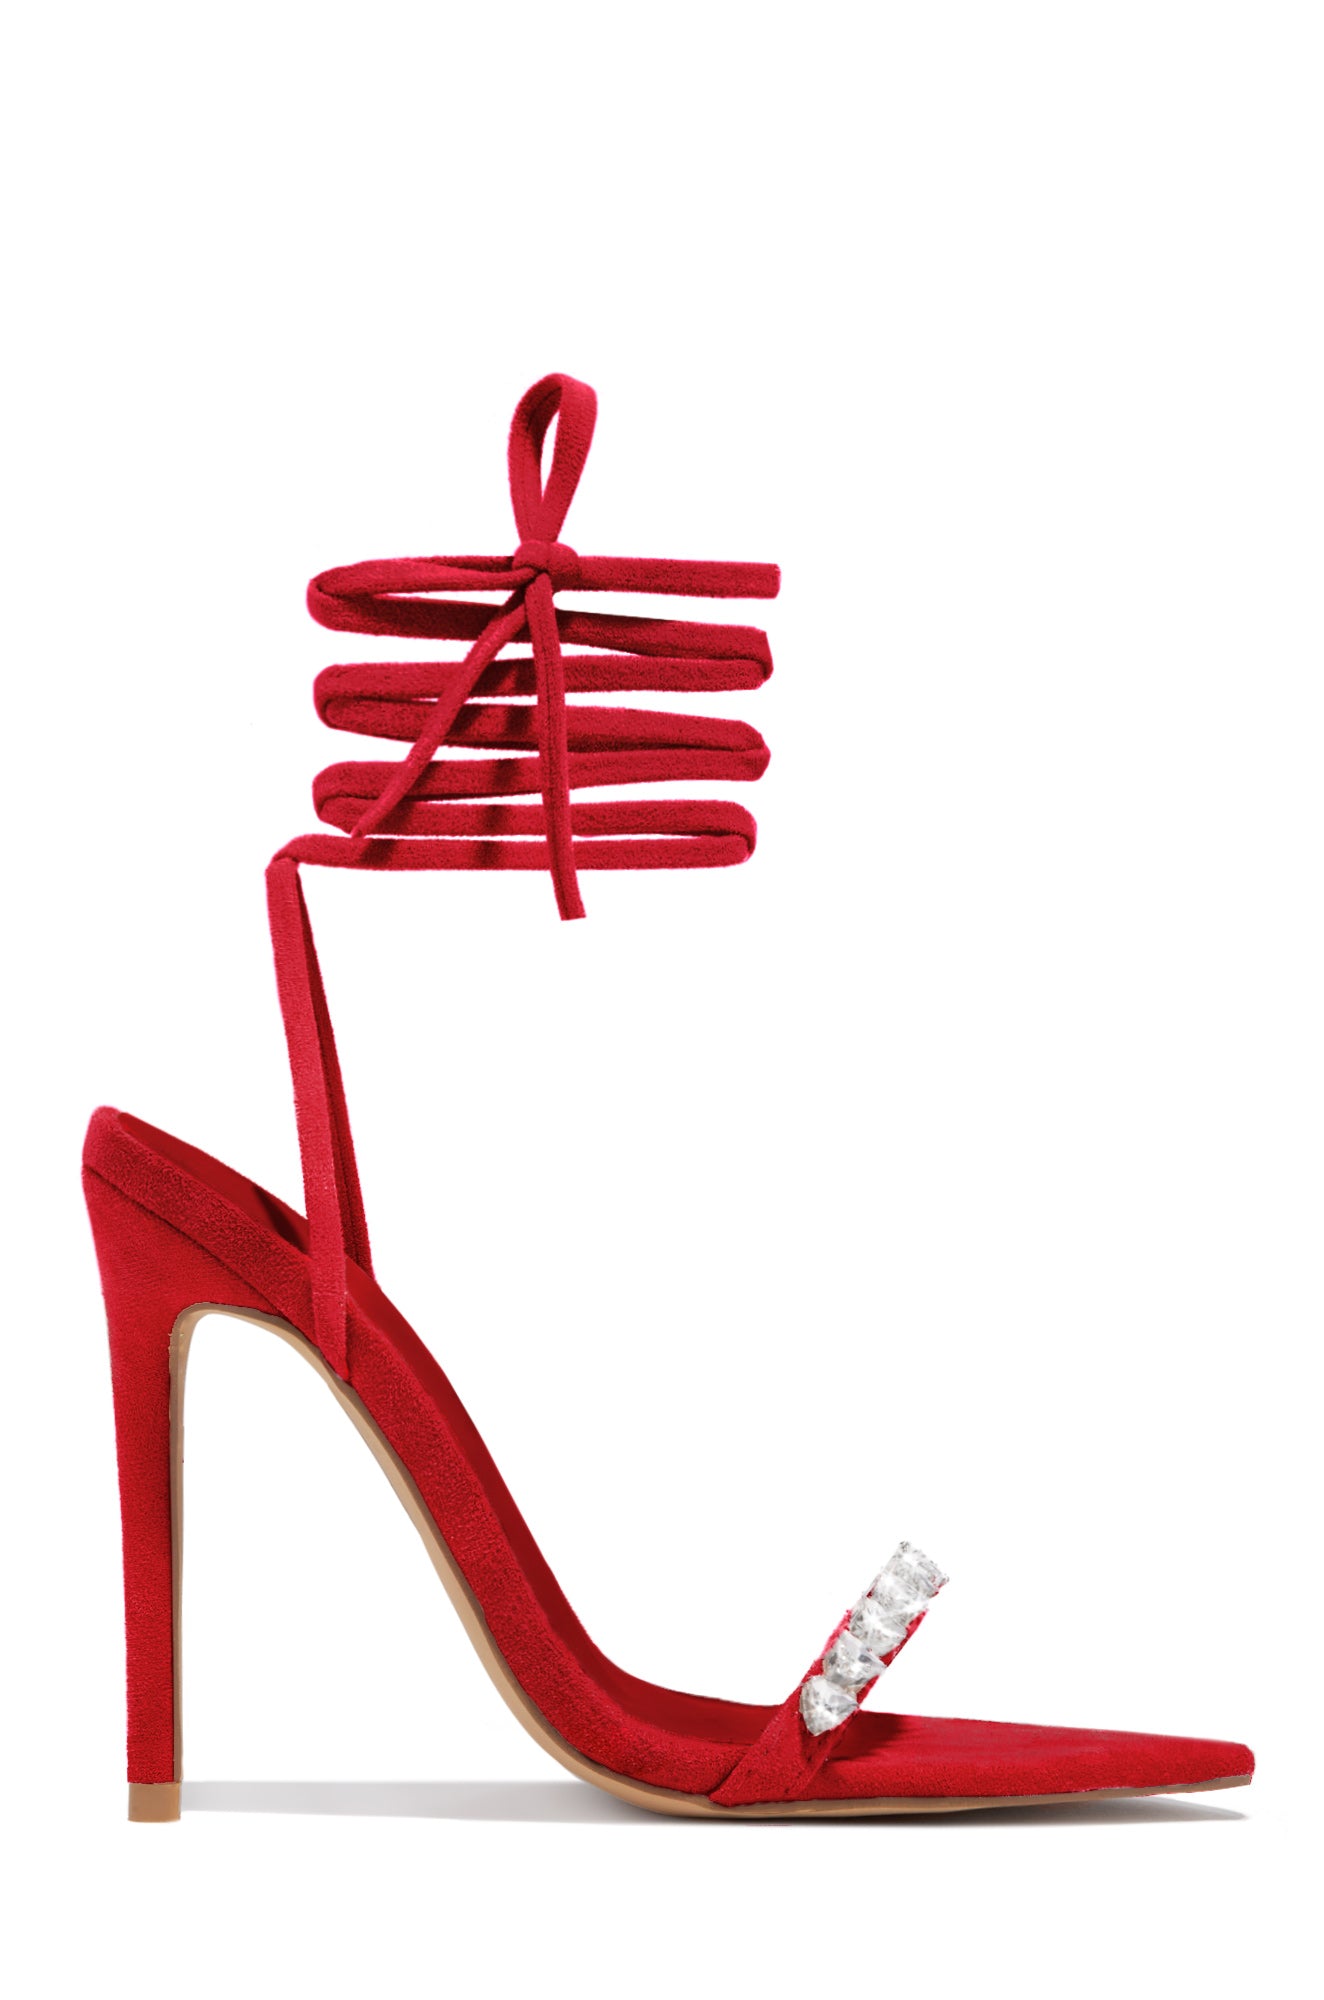 Red High Heels for sale in Eugene, Oregon | Facebook Marketplace | Facebook